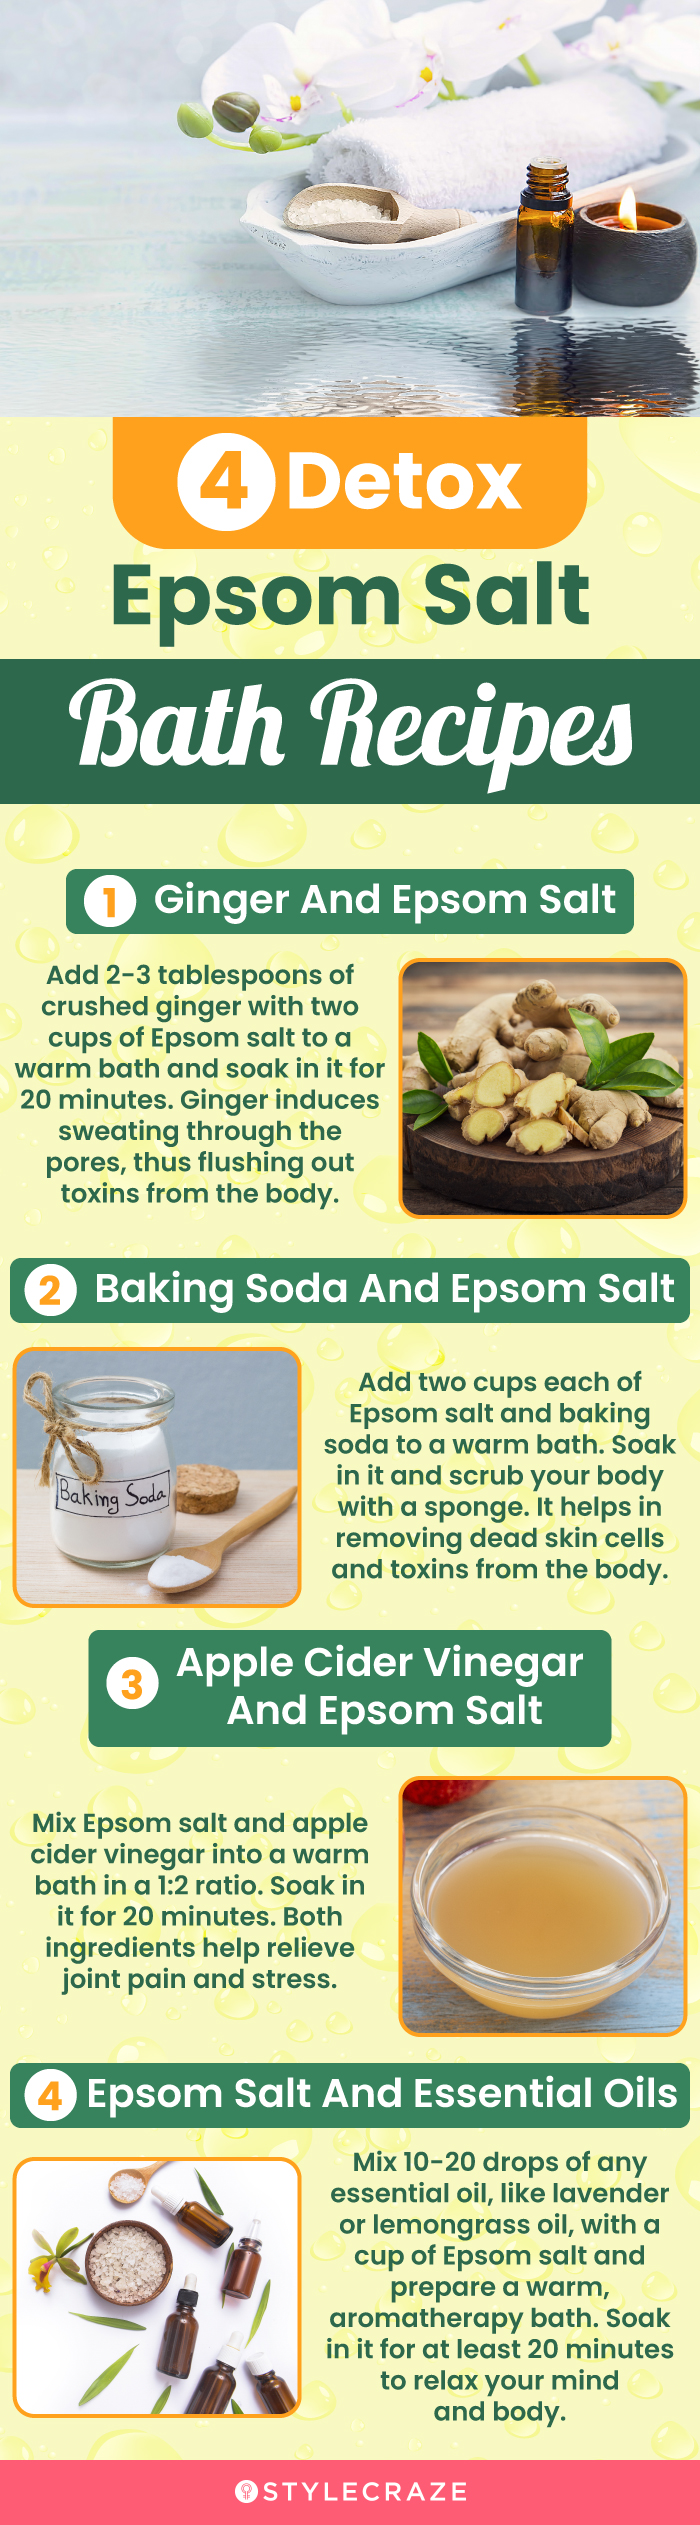 4 detox epsom salt bath recipes (infographic)